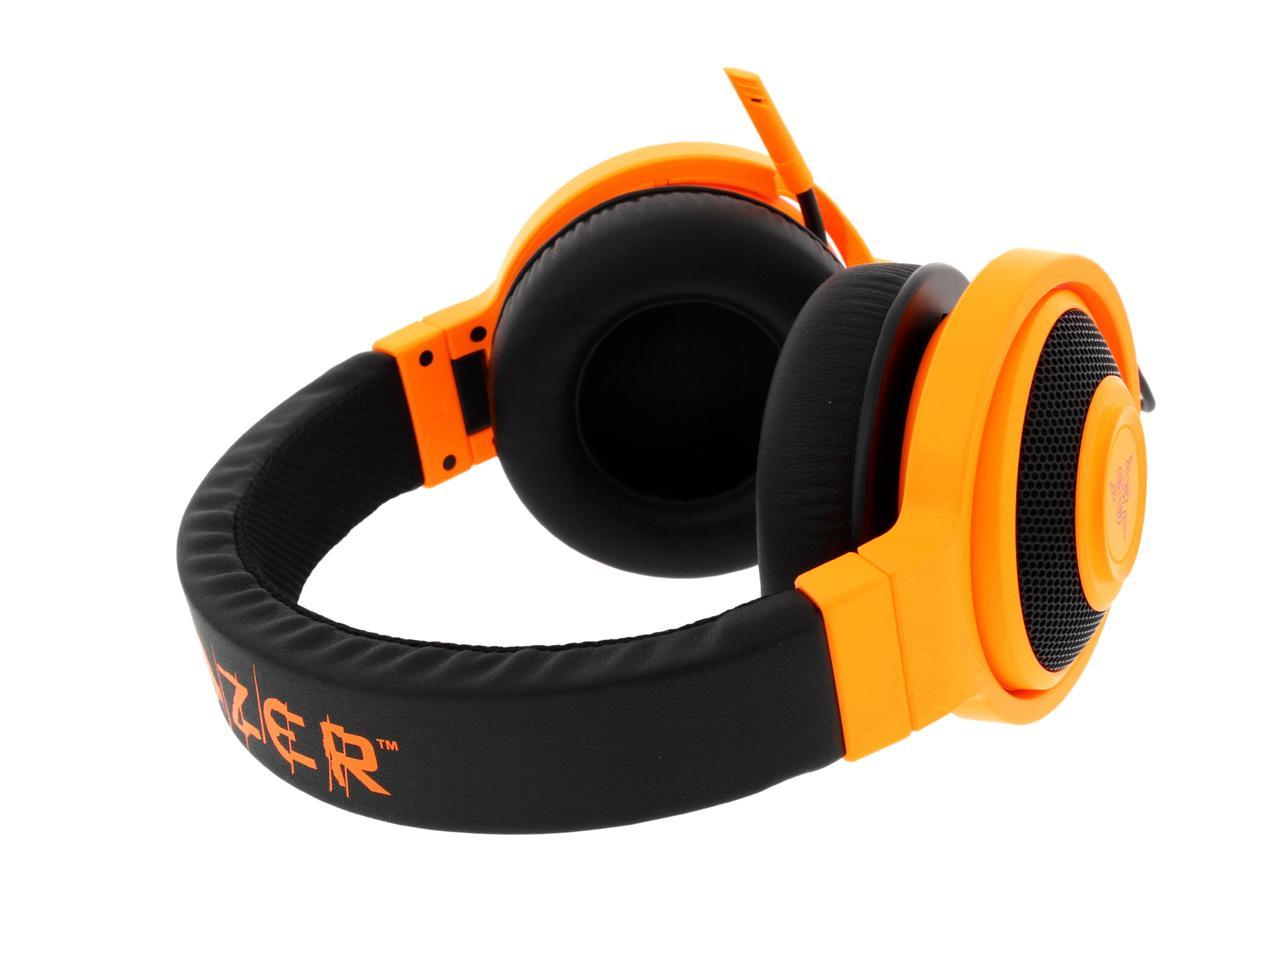 Razer Kraken Pro Over Ear PC Gaming and Music Headset ...